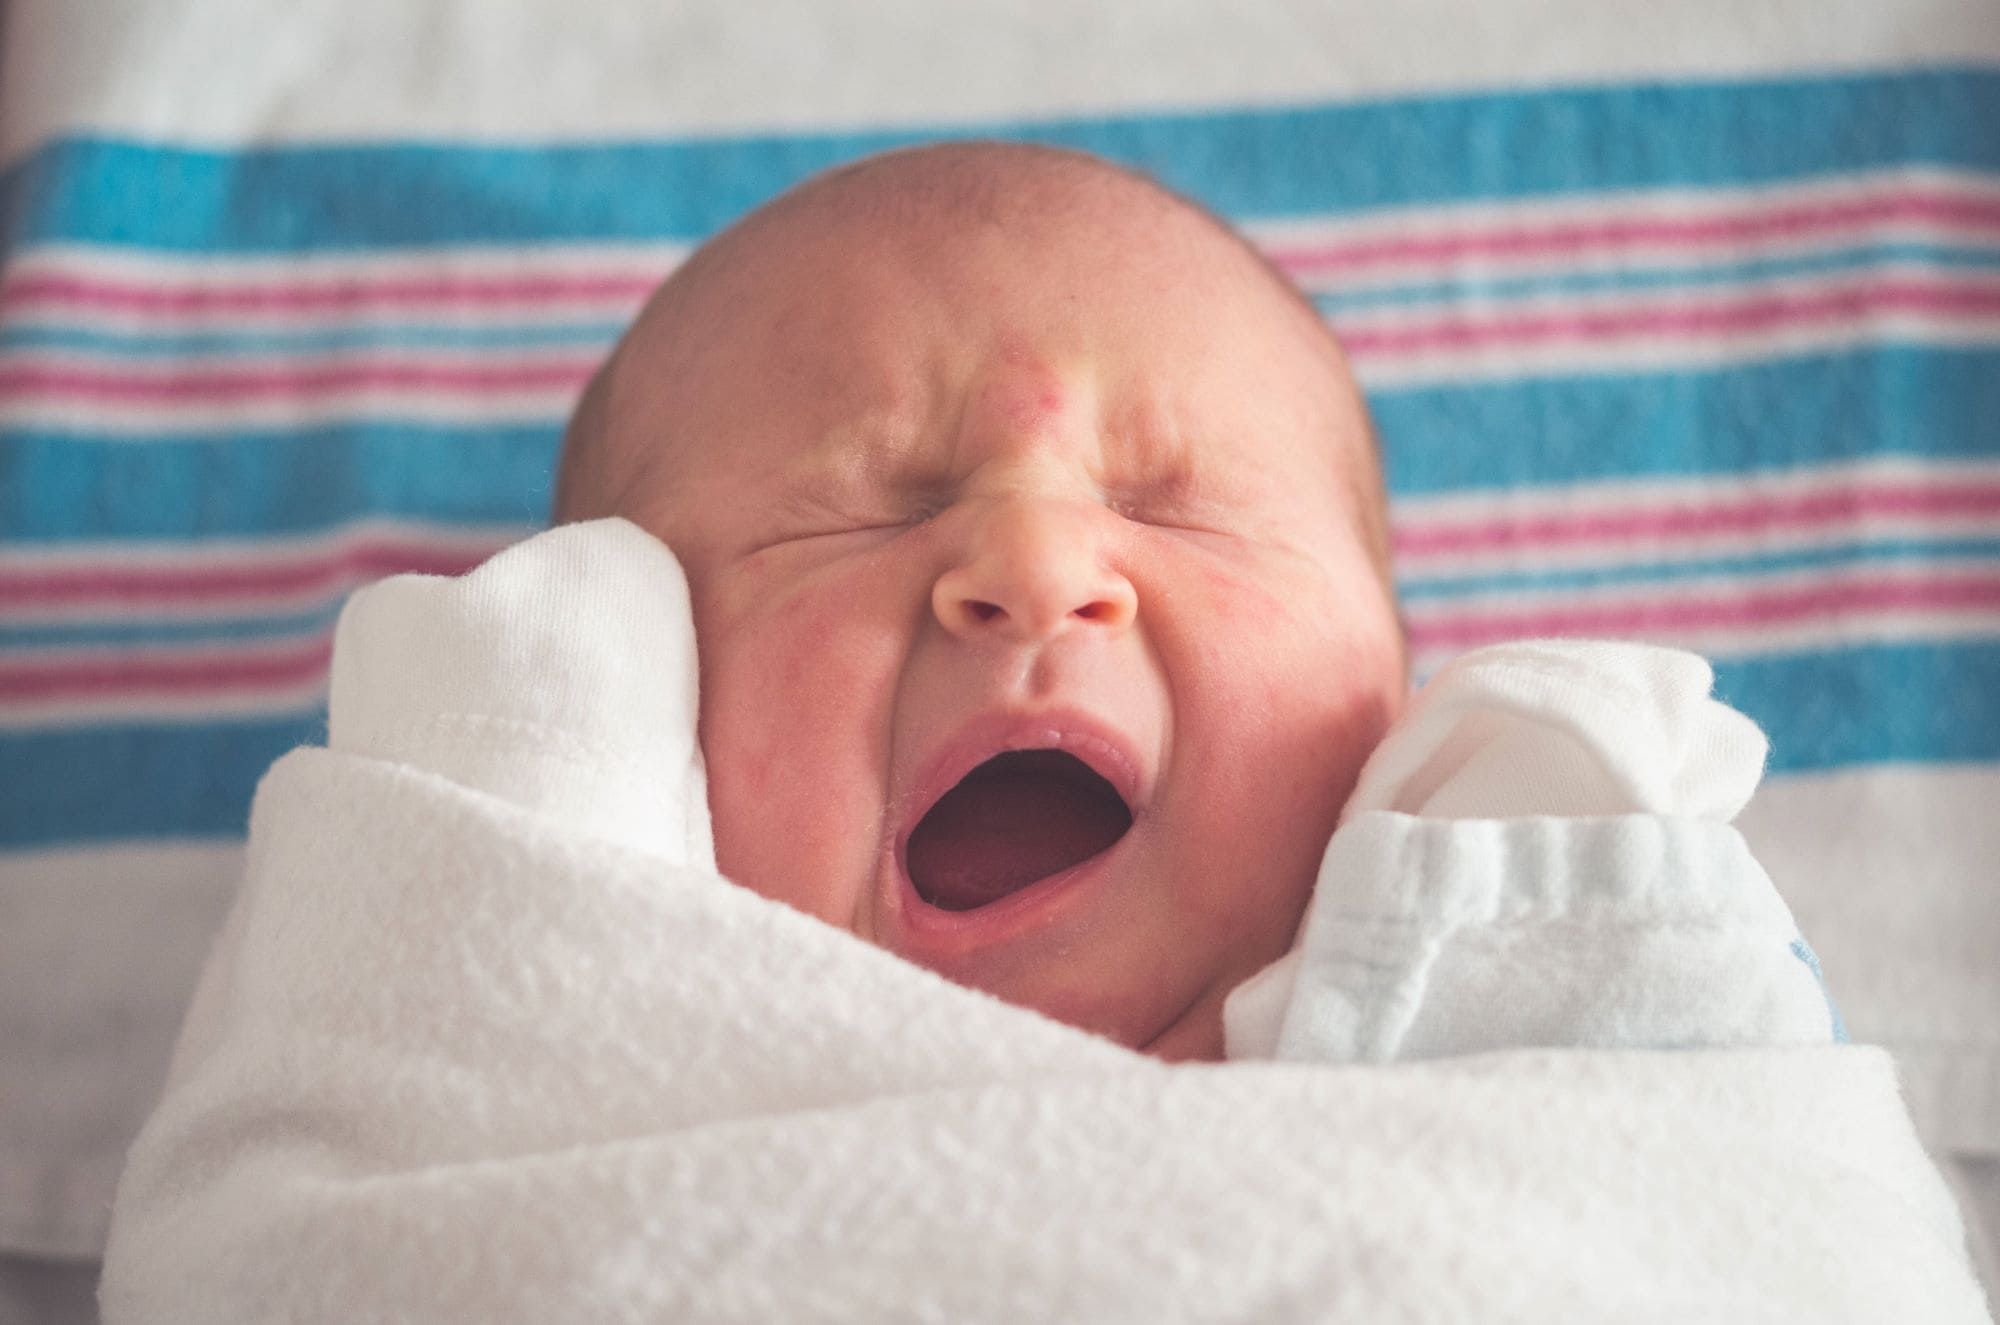 Comment moucher bébé sans mouche bébé - Conseils, matériel